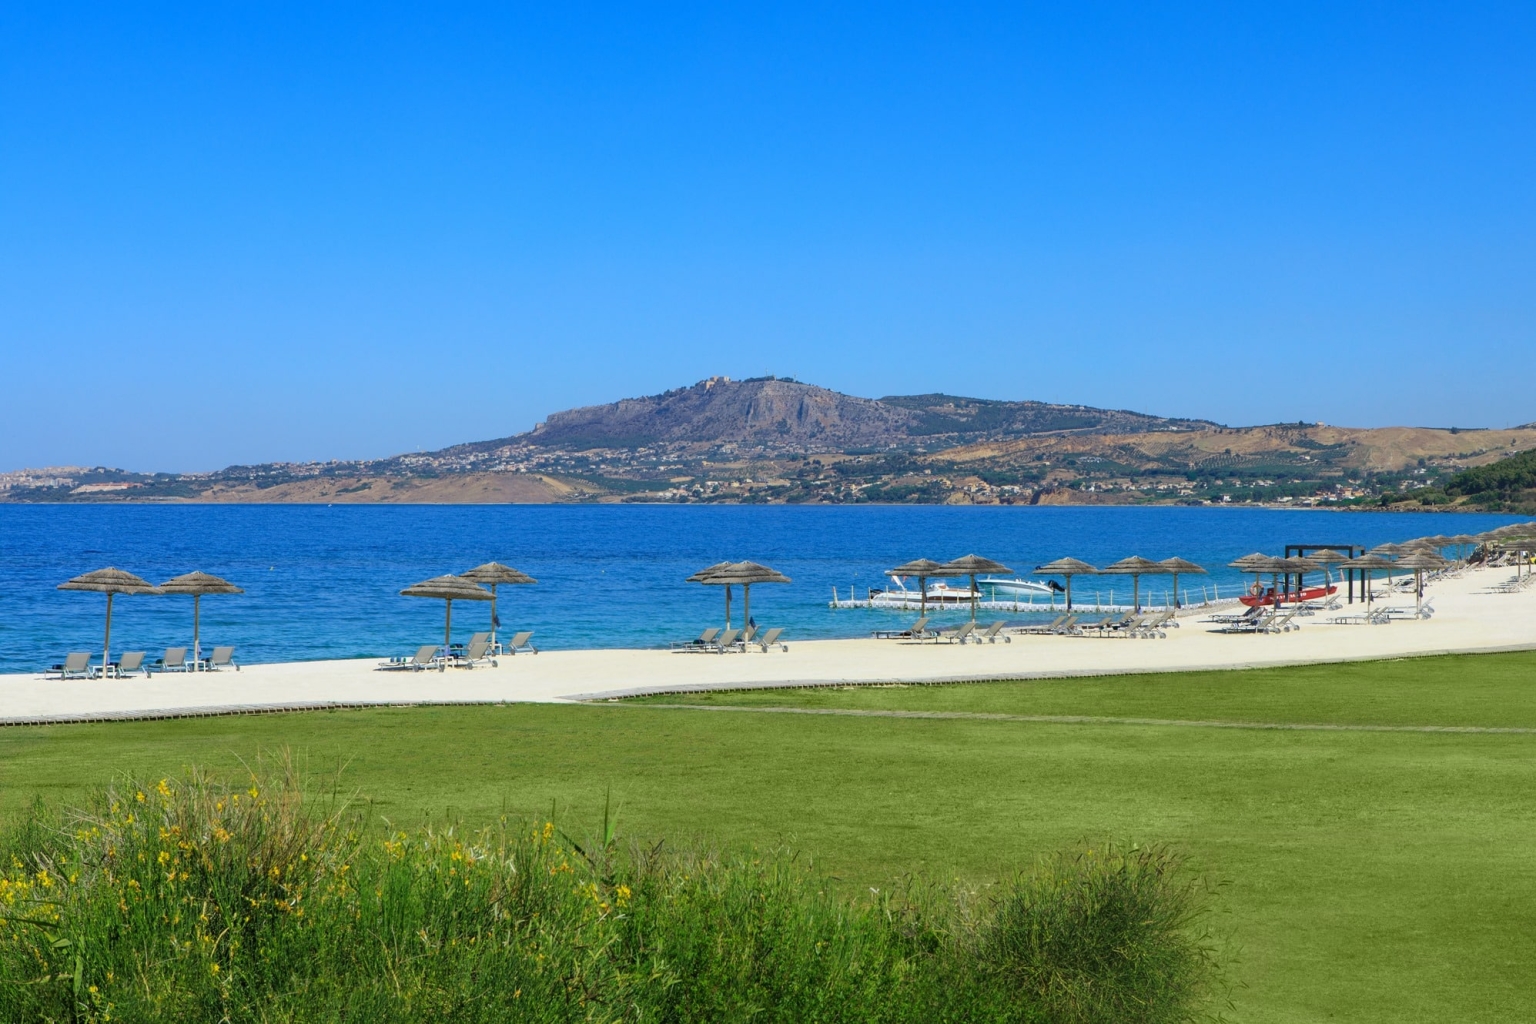 Sizilien Verdura Resort Golf Roccoforte Sciacca Luxus Qualität hochwertig Golfplatz Meer Strand